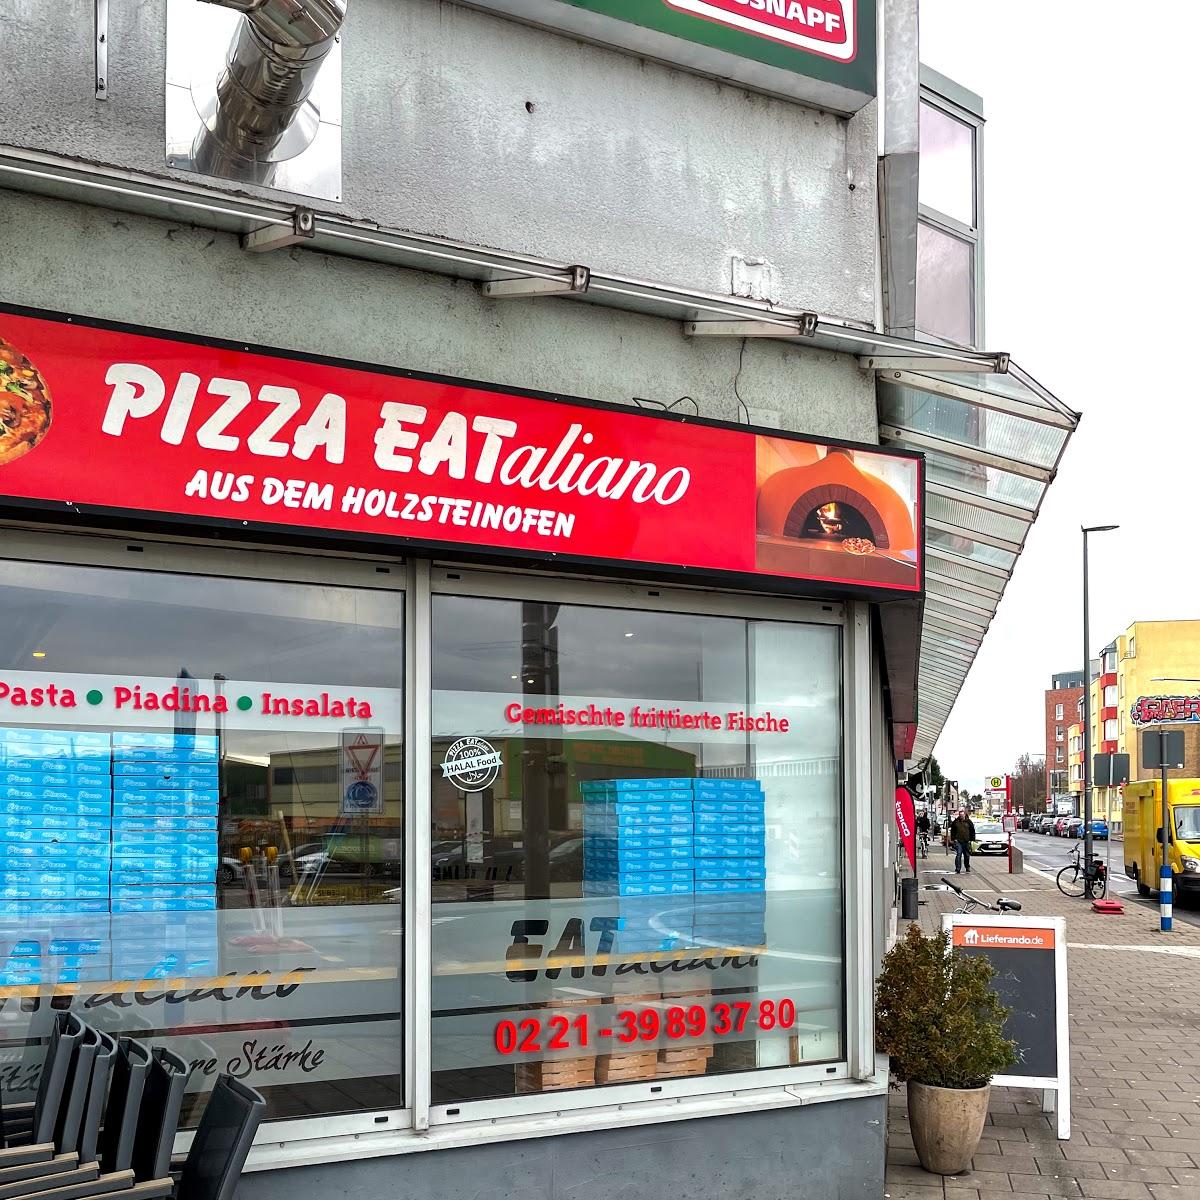 Pizza EATaliano Holzsteinofen - Pizza, Pasta in Köln Südstadt